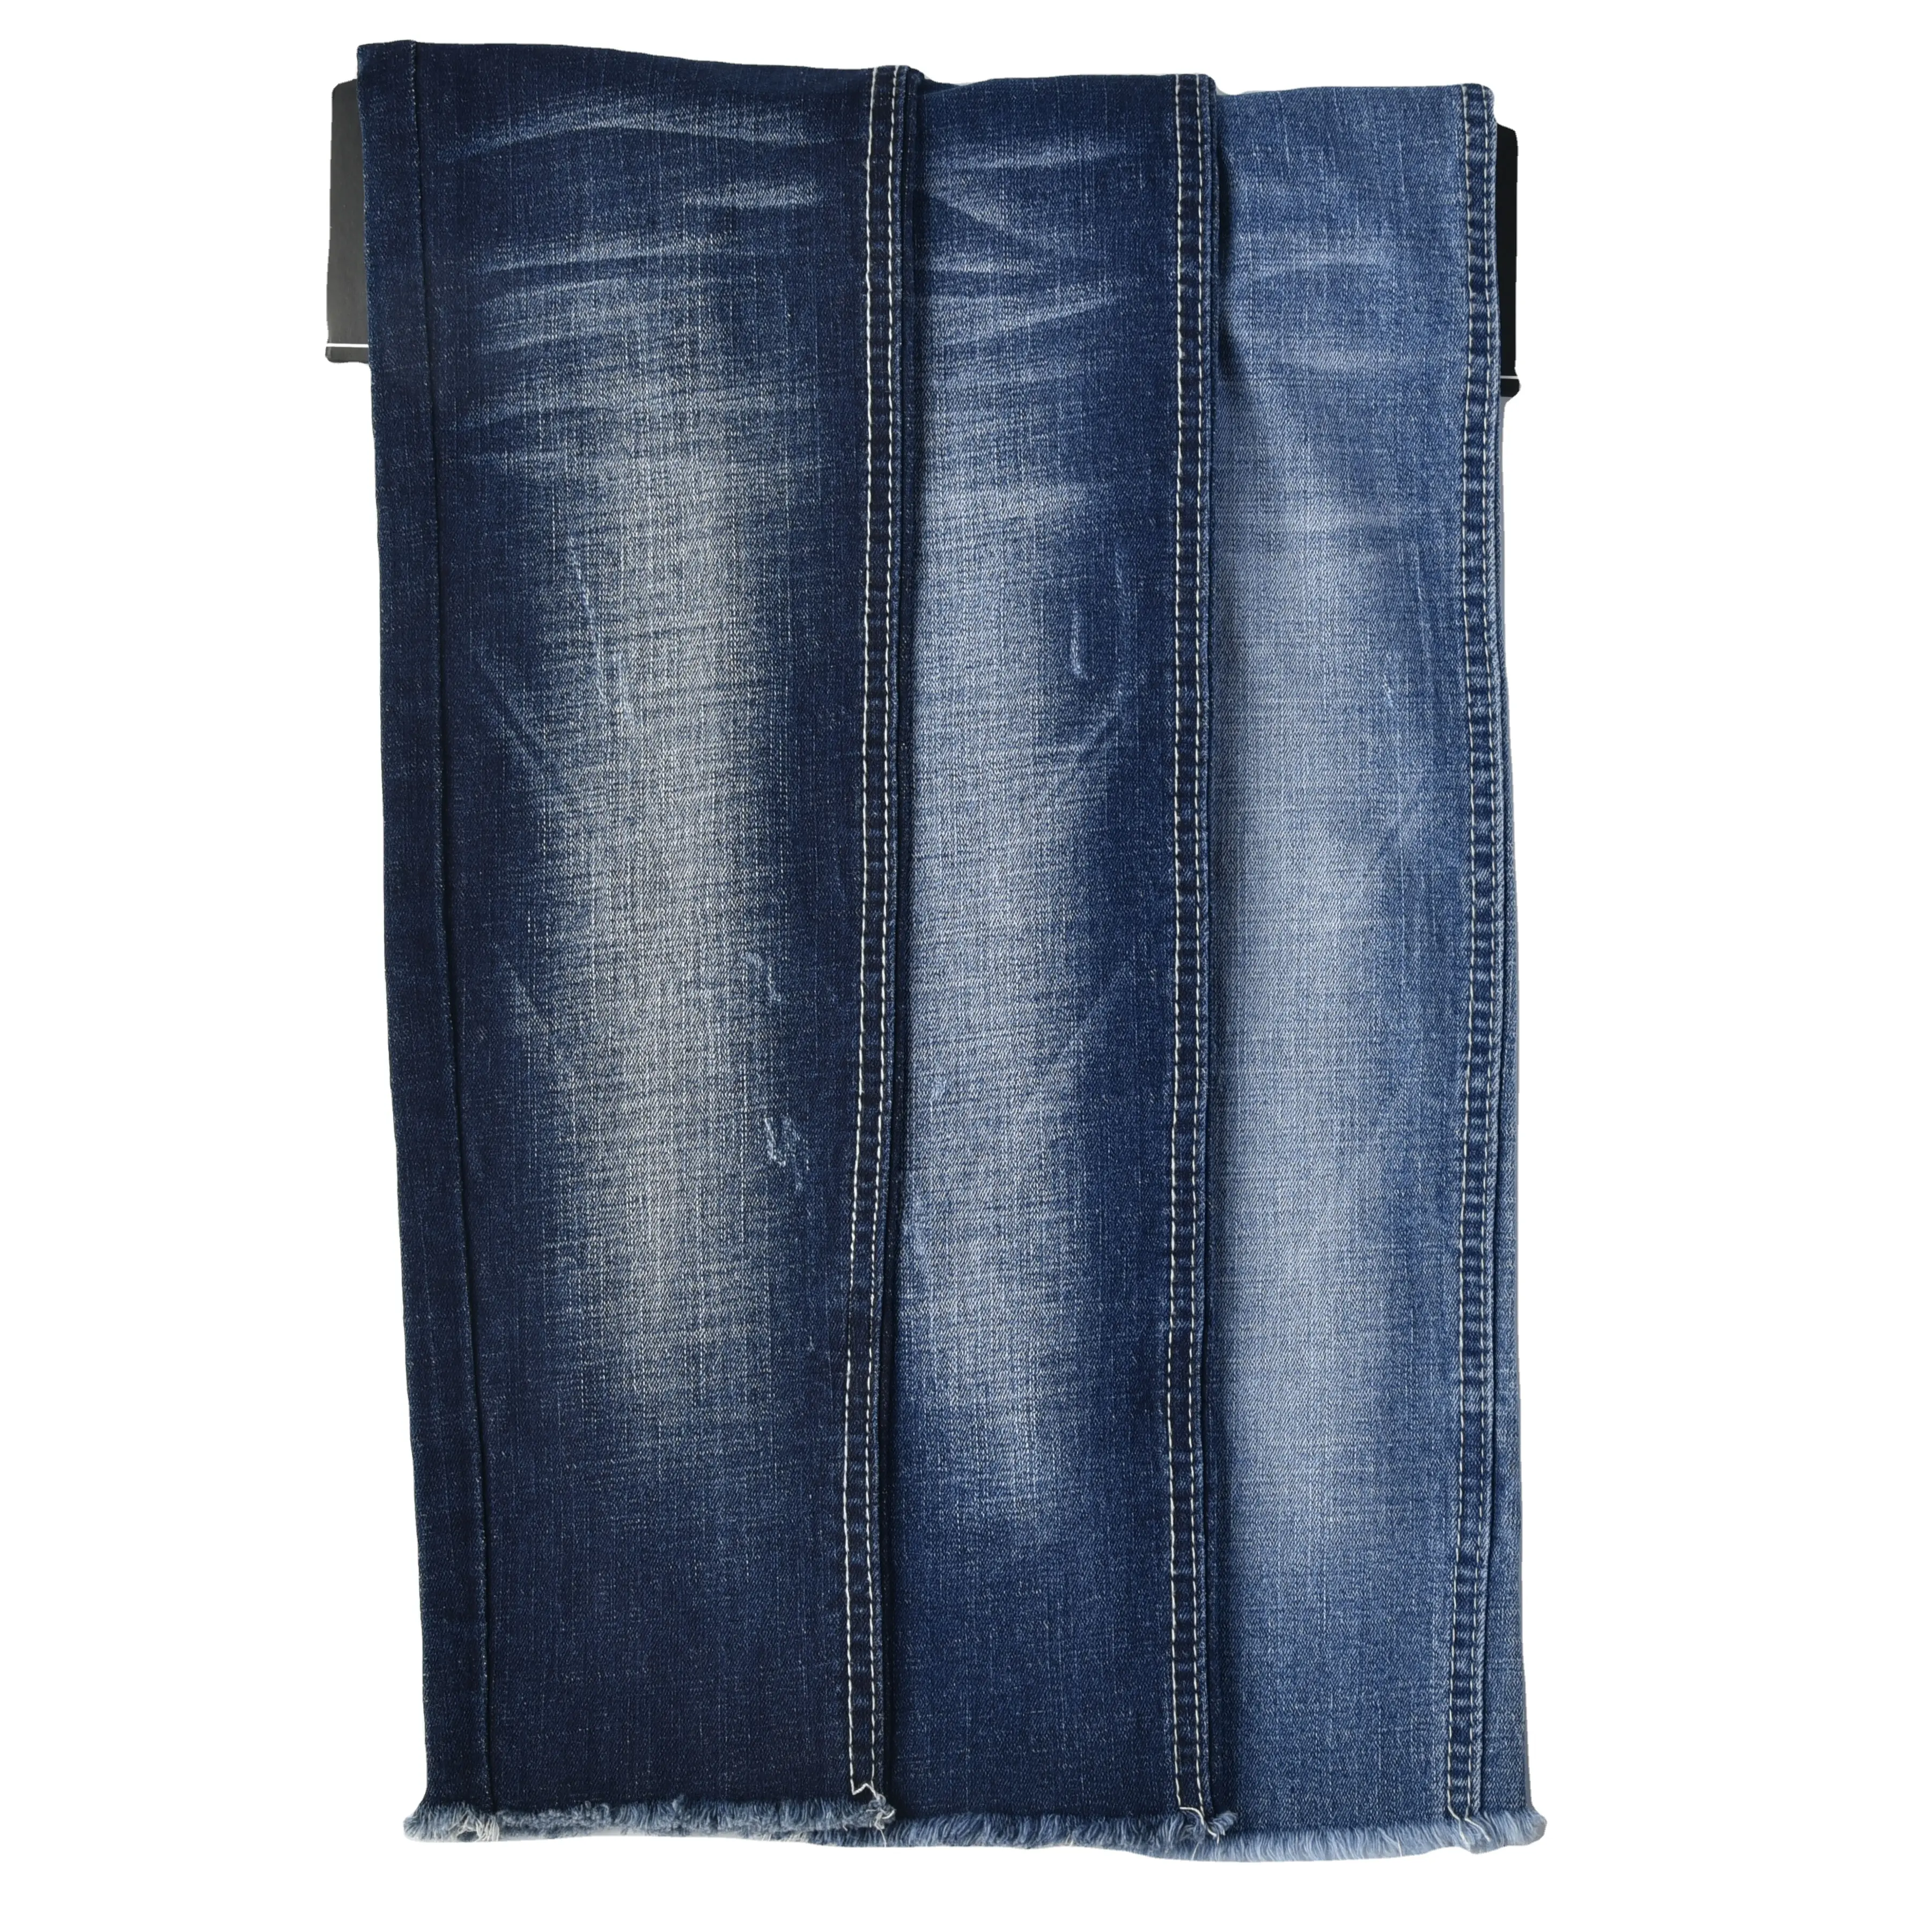 Фабричное производство, 9 унций, хлопчатобумажная эластан, джинсовая ткань для джинсов